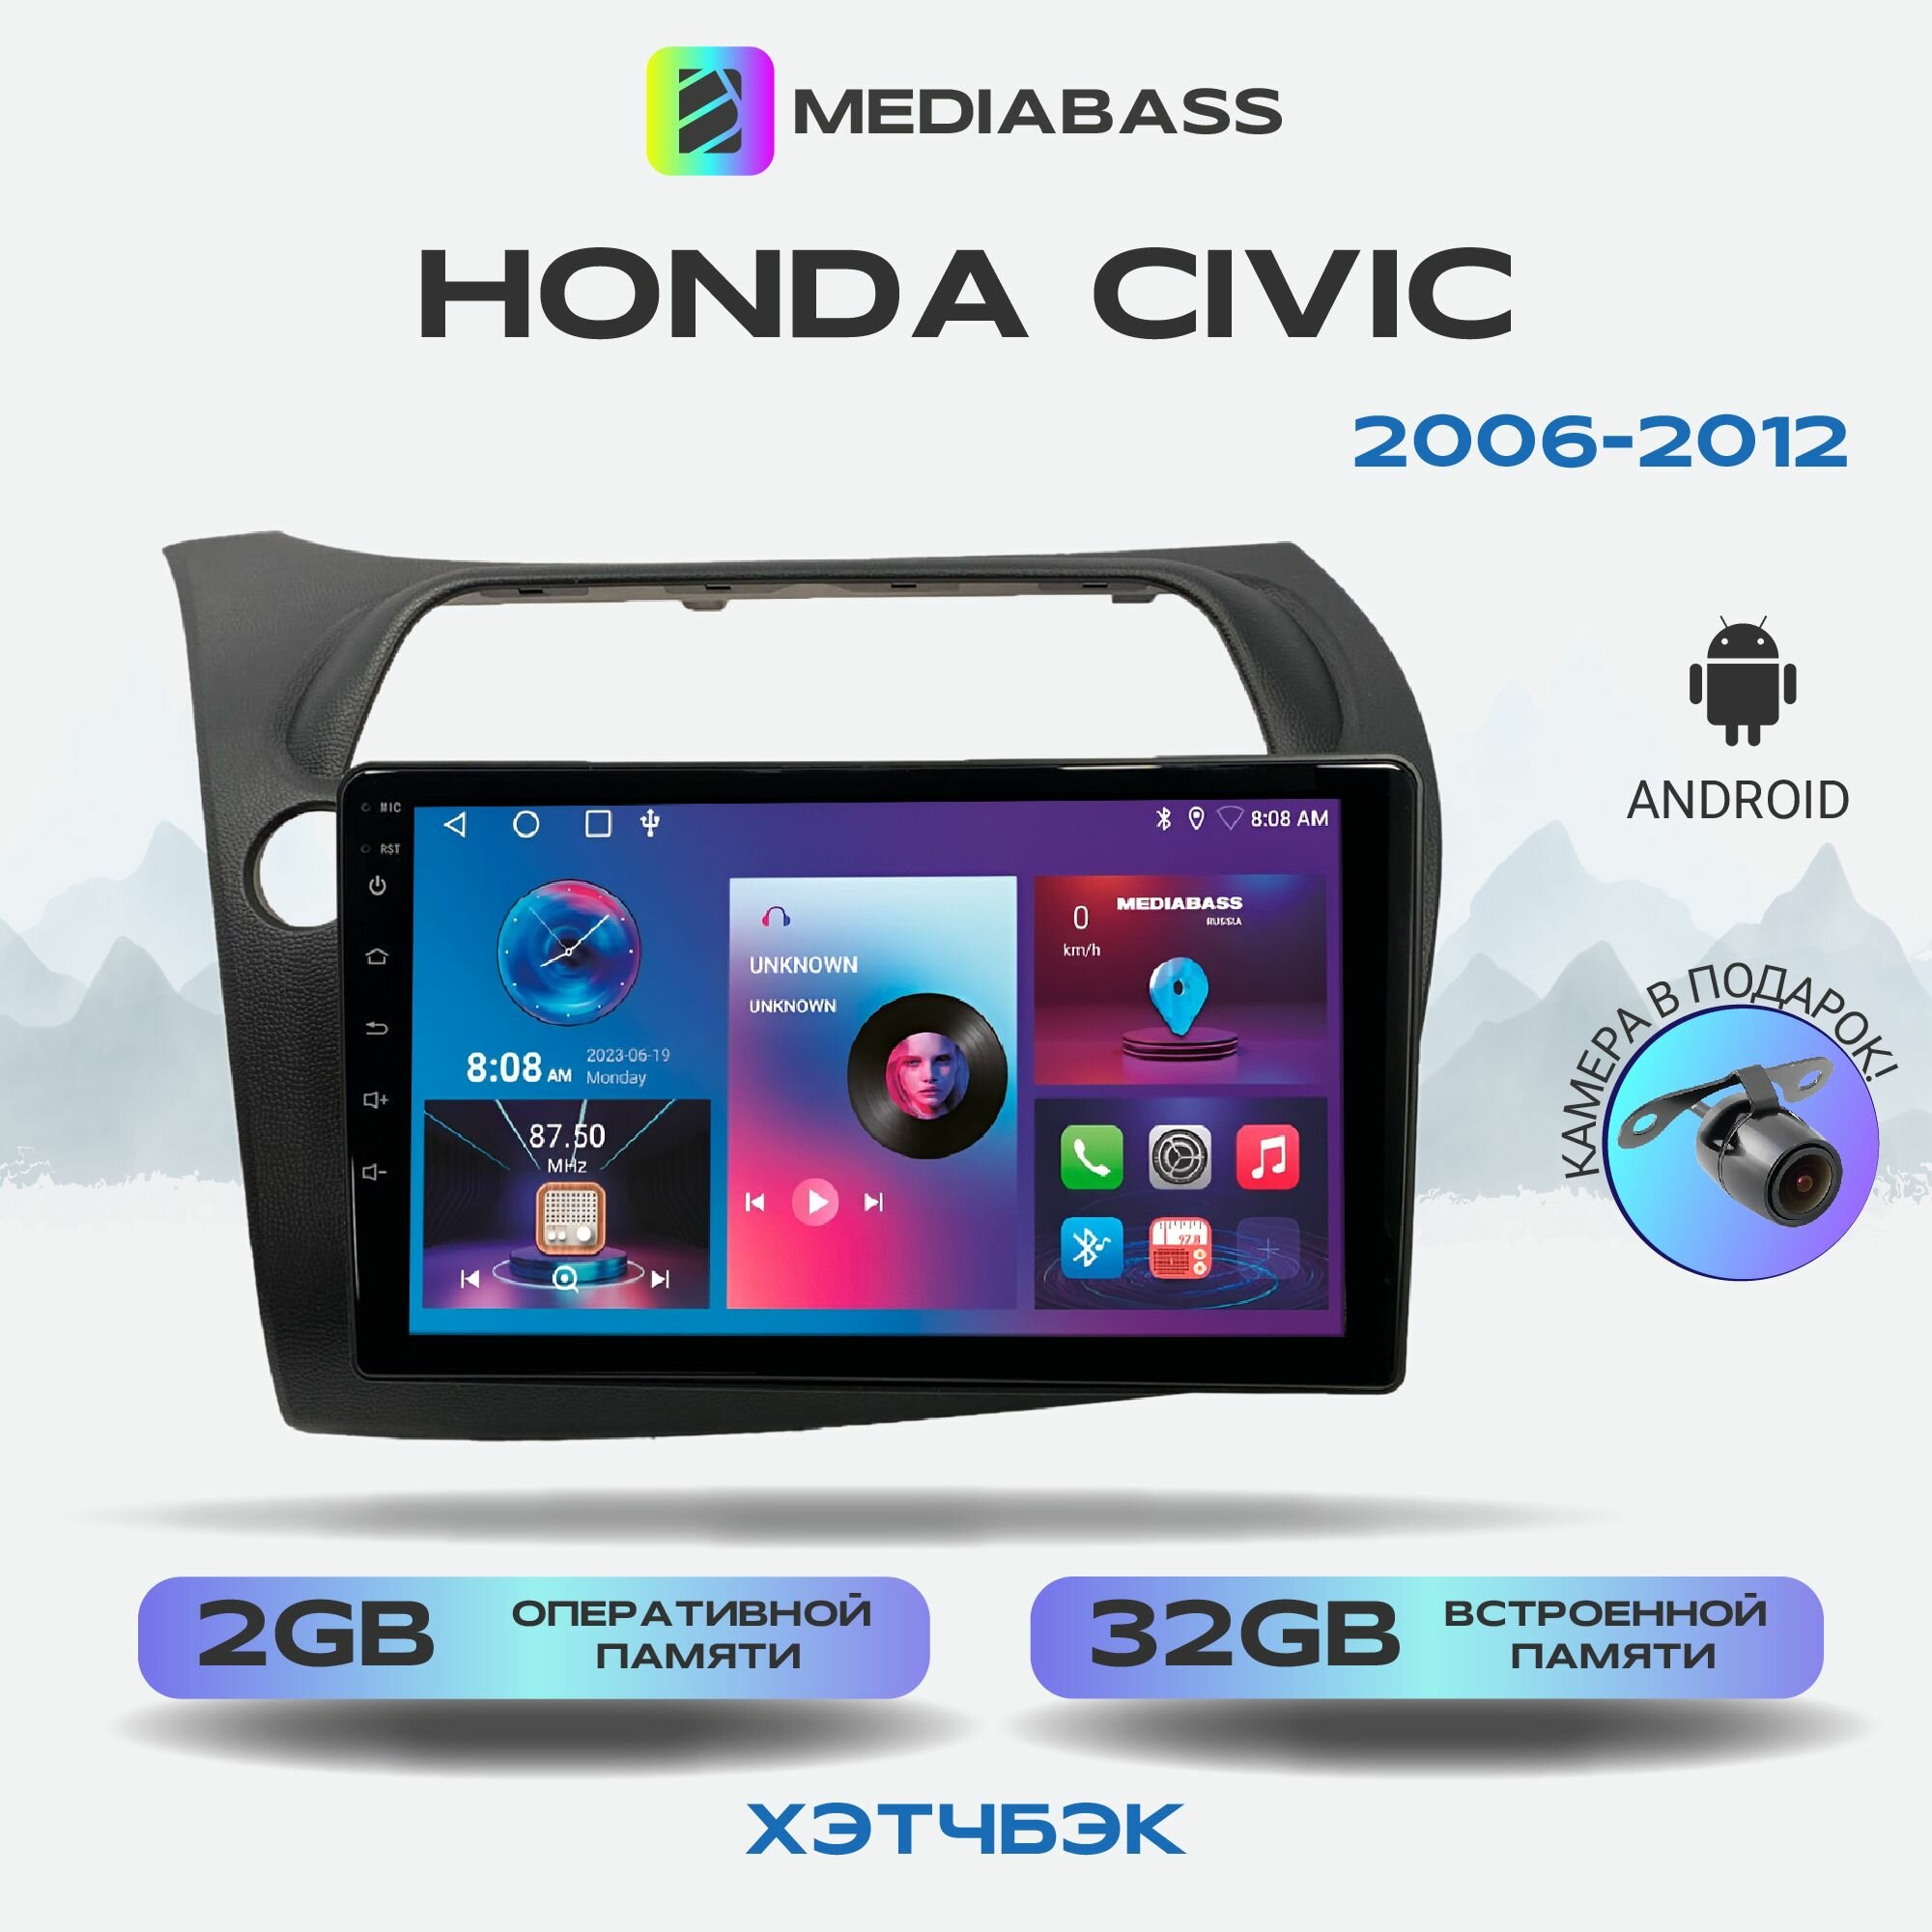 Штатная магнитола Honda Civic Хонда Цивик хэтчбэк 2006-2012, Android 12, 2/32ГБ, 4-ядерный процессор, QLED экран с разрешением 1280*720, чип-усилитель YD7388, планшет / Хонда Цивик хэтчбэк